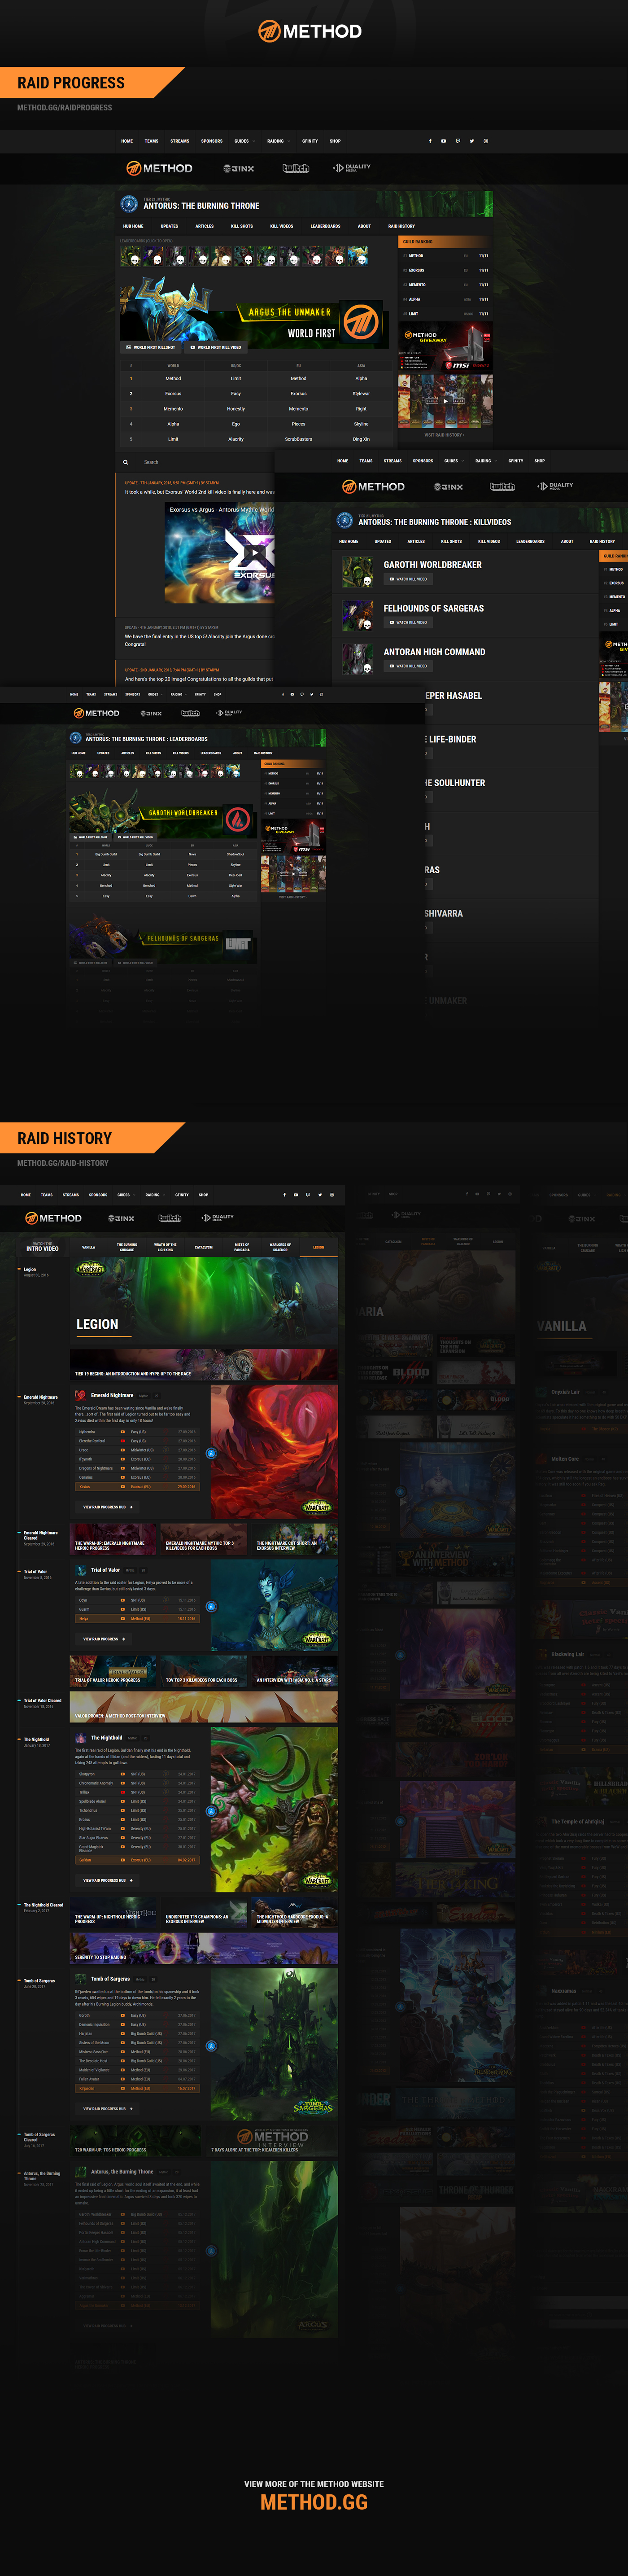 World of warcraft raiding guild website Esports Organisation wow design